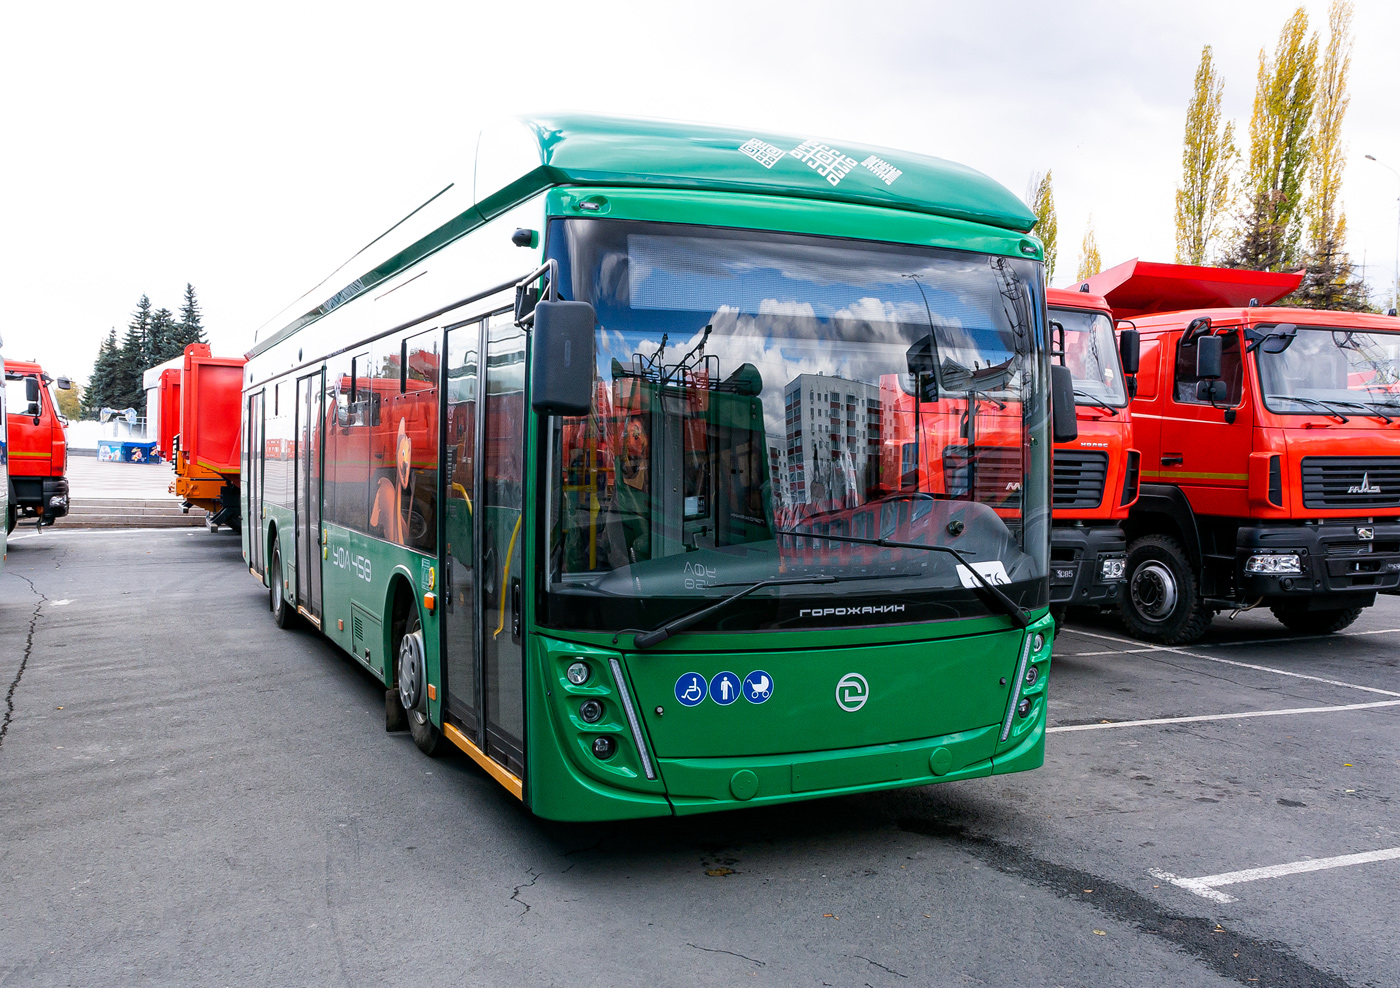 烏法, UTTZ-6241.01 “Gorozhanin” # 1076; 烏法 — New BTZ trolleybuses